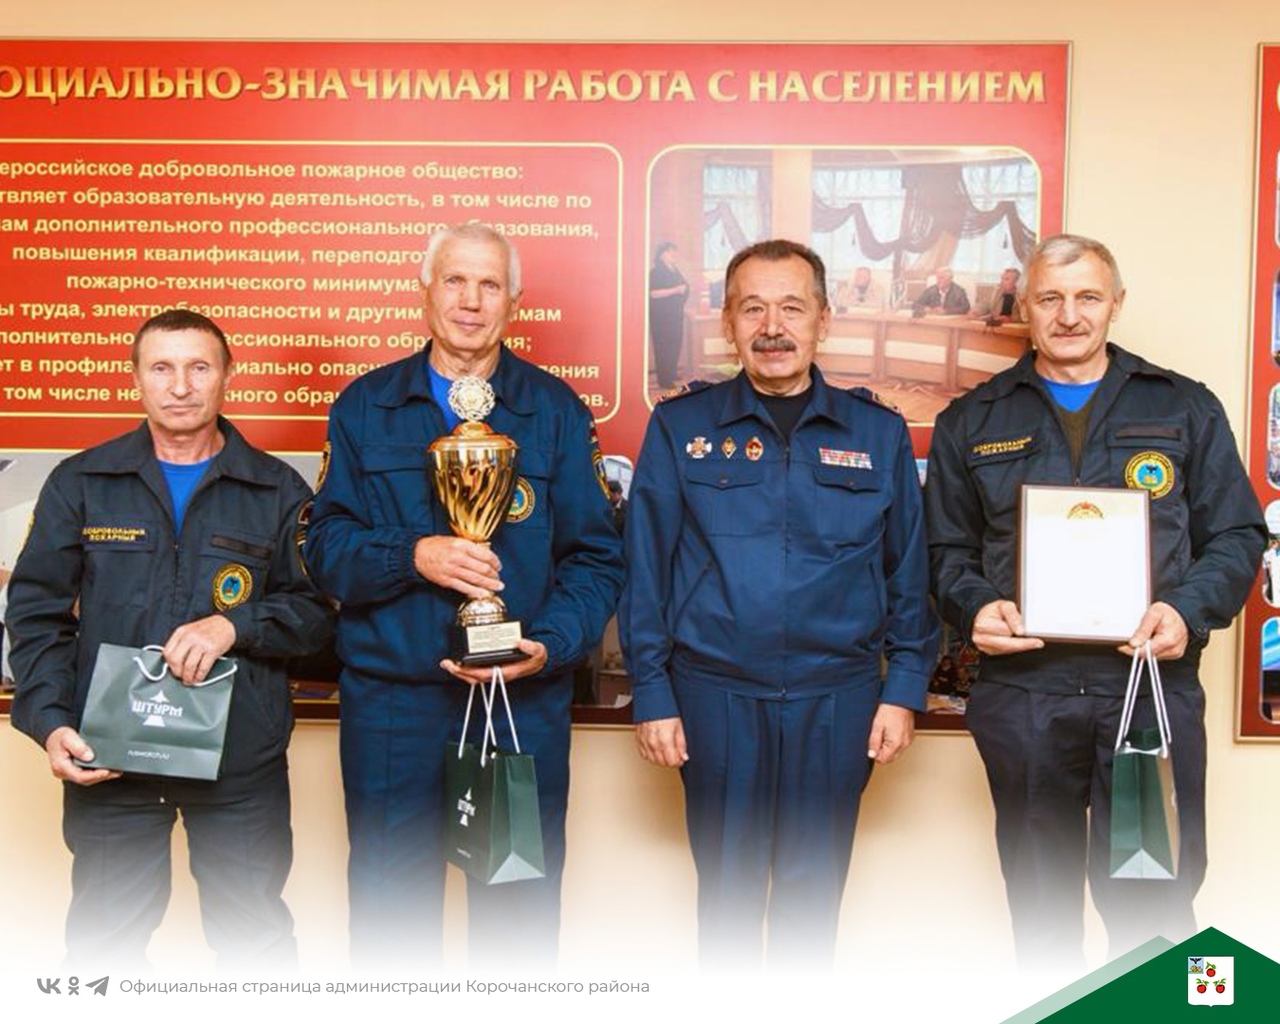 130-летие Российского пожарного общества